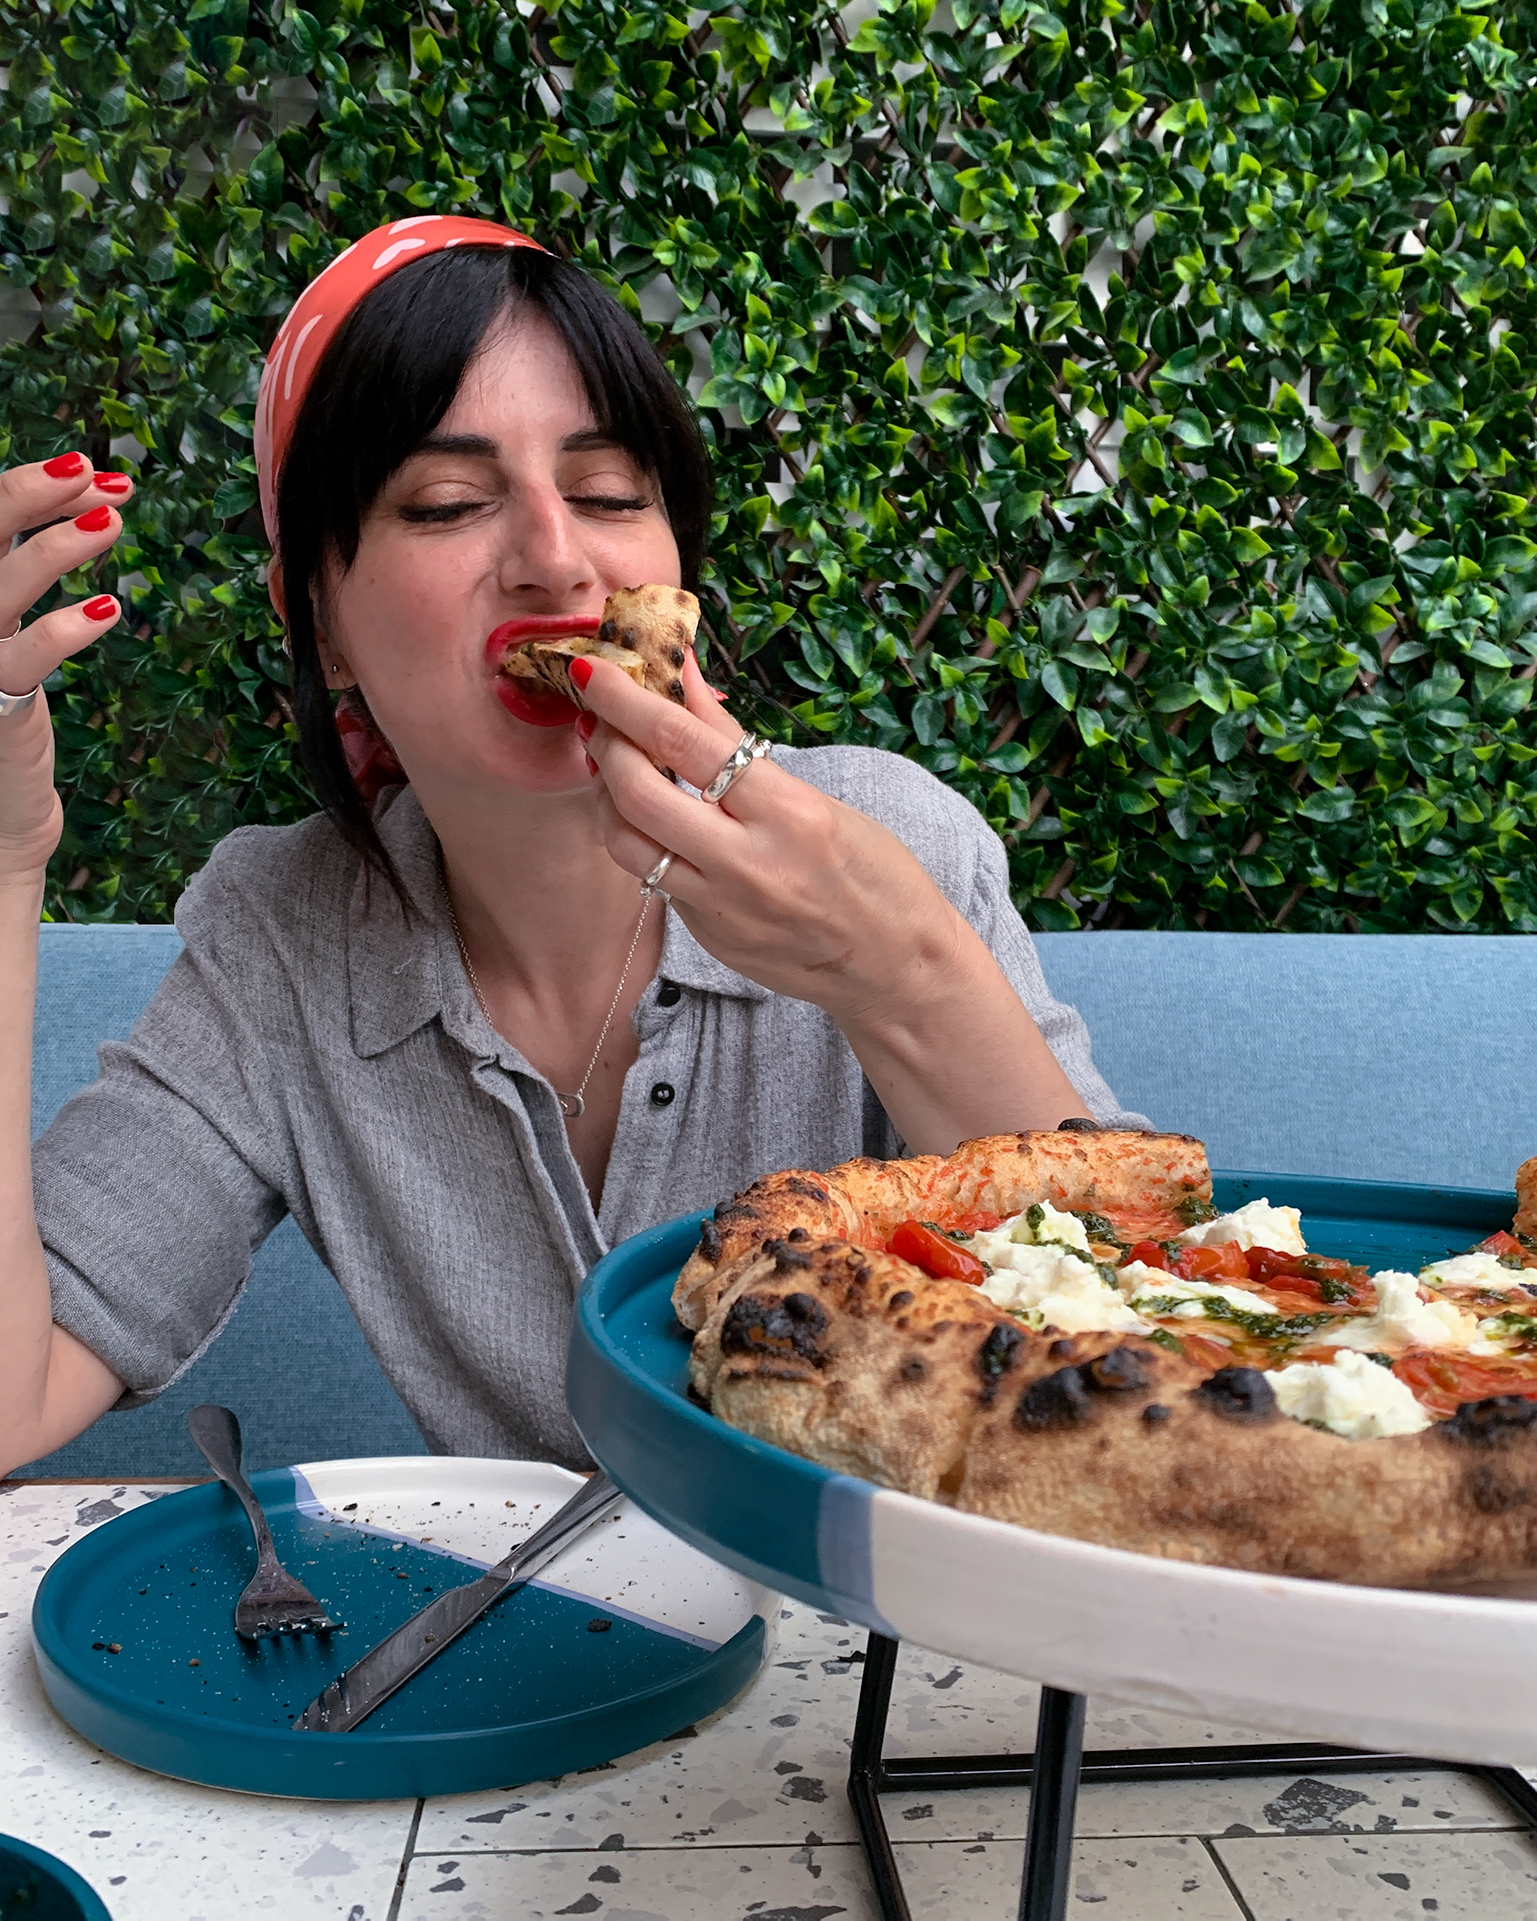 Στο Nolio η πίτσα είναι ναπολιτάνικη και ωριμάζει 72 ώρες, τα ζυμαρικά είναι φρέσκα και τα ορεκτικά μιλούν ιταλικά.